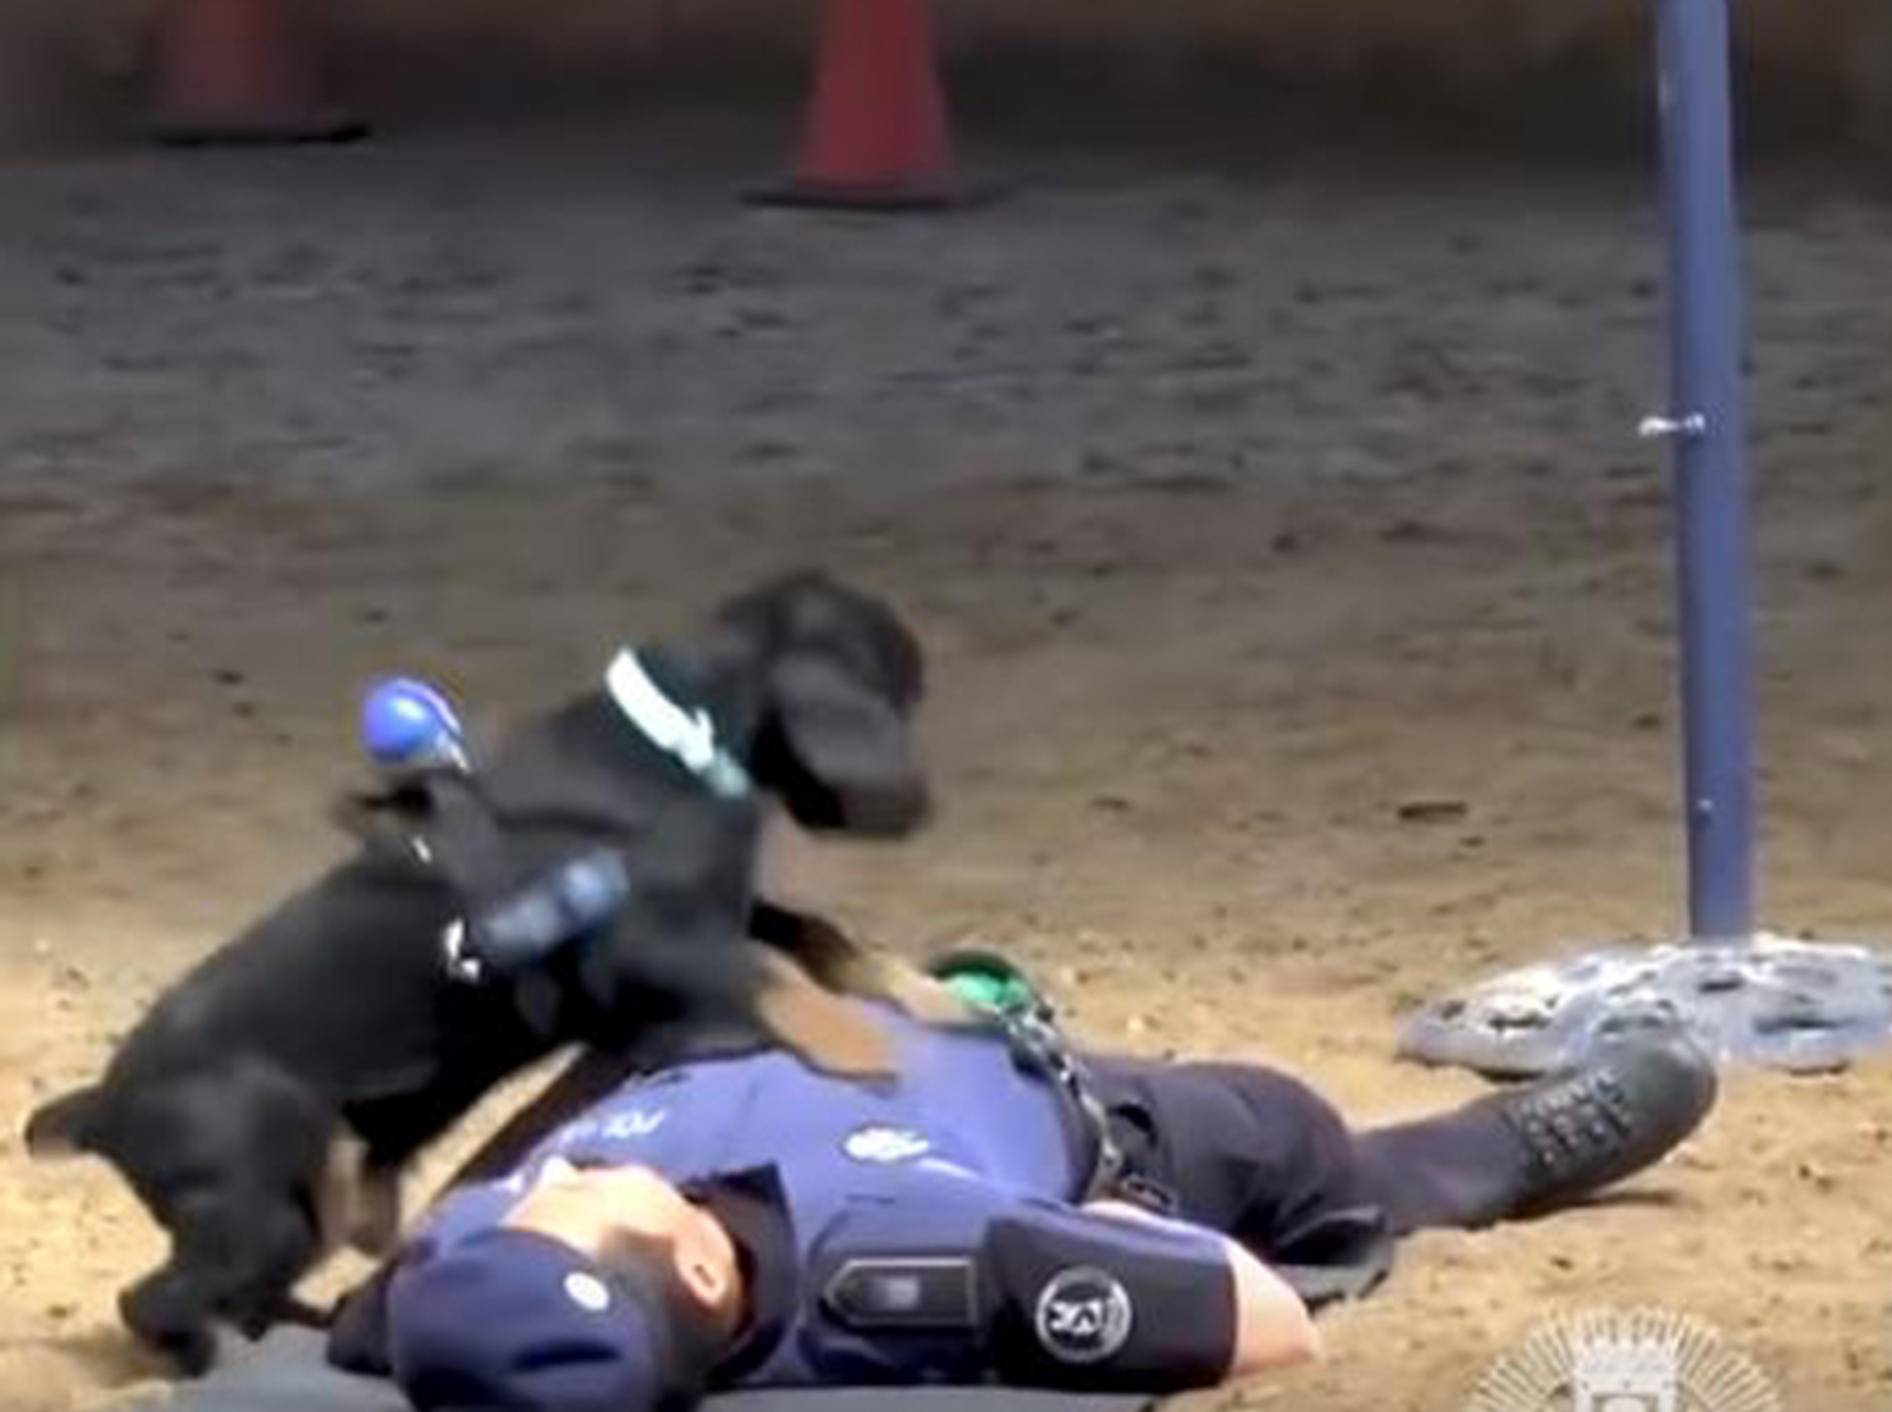 Polizeihund Poncho in Aktion - Bild: YouTube / WELT